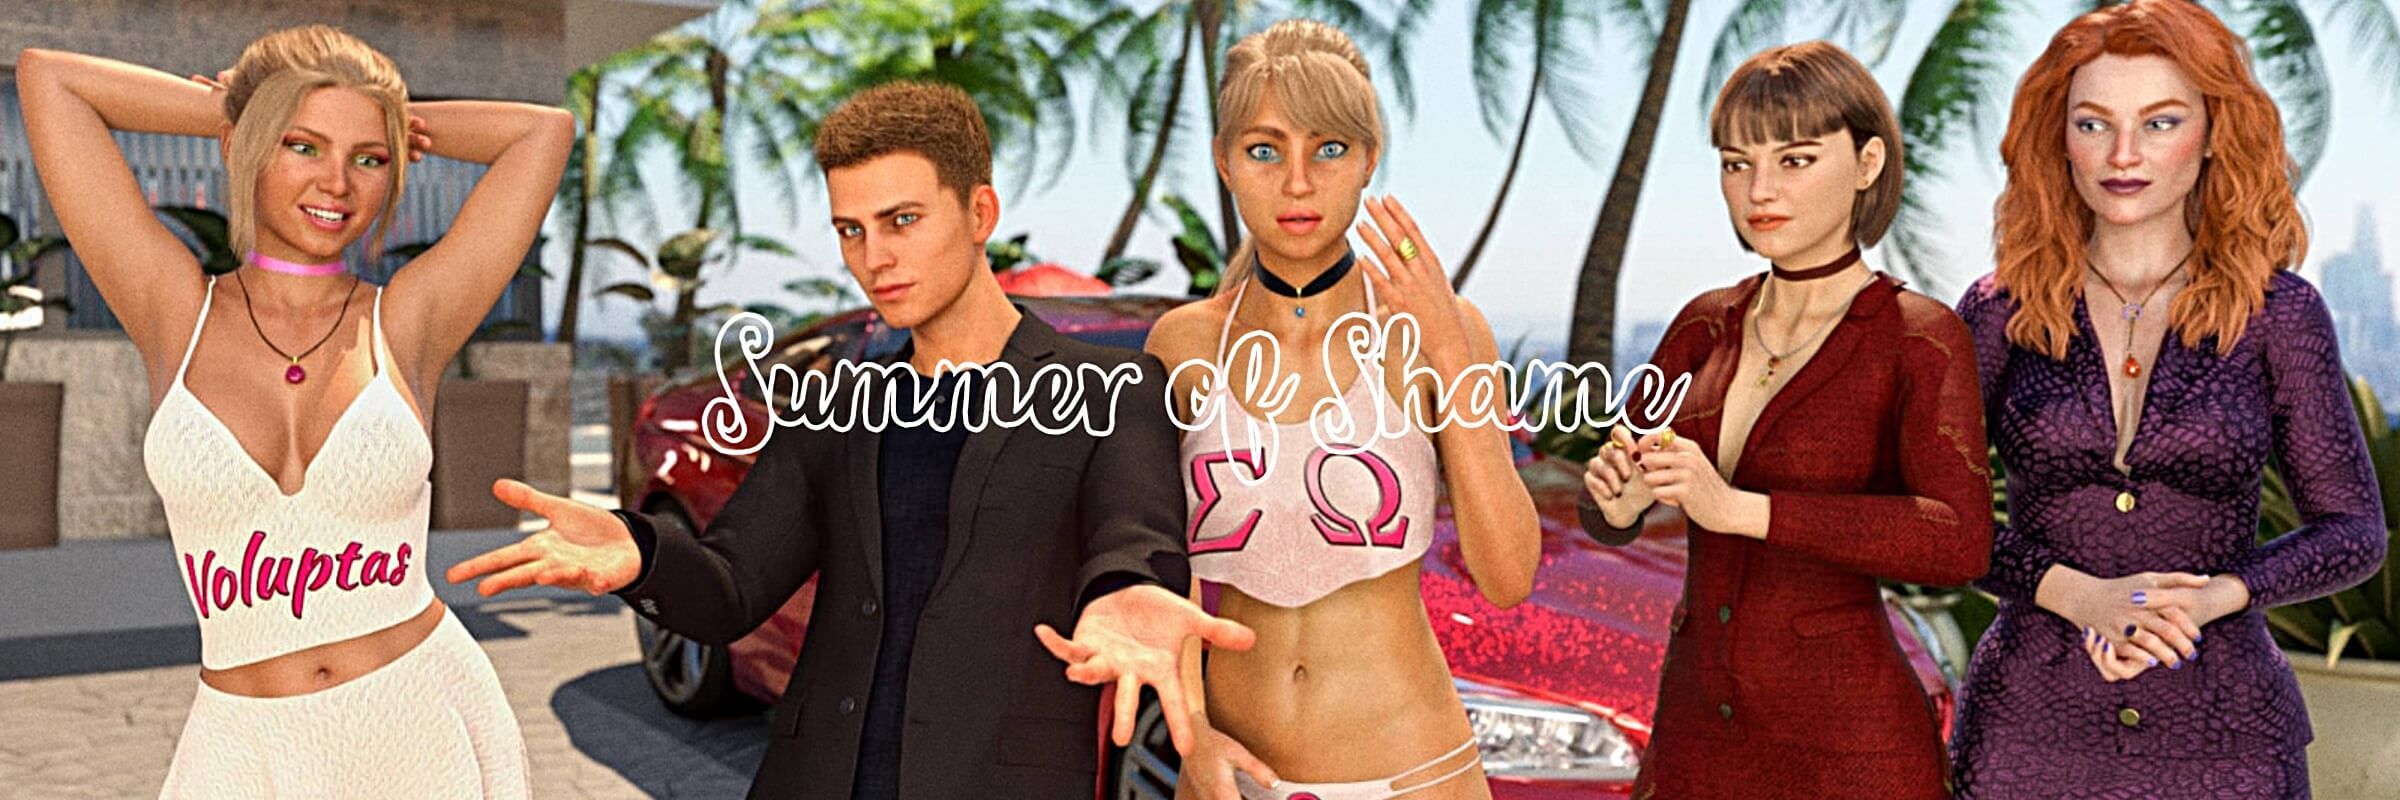 Summer of Shame [v0.36]